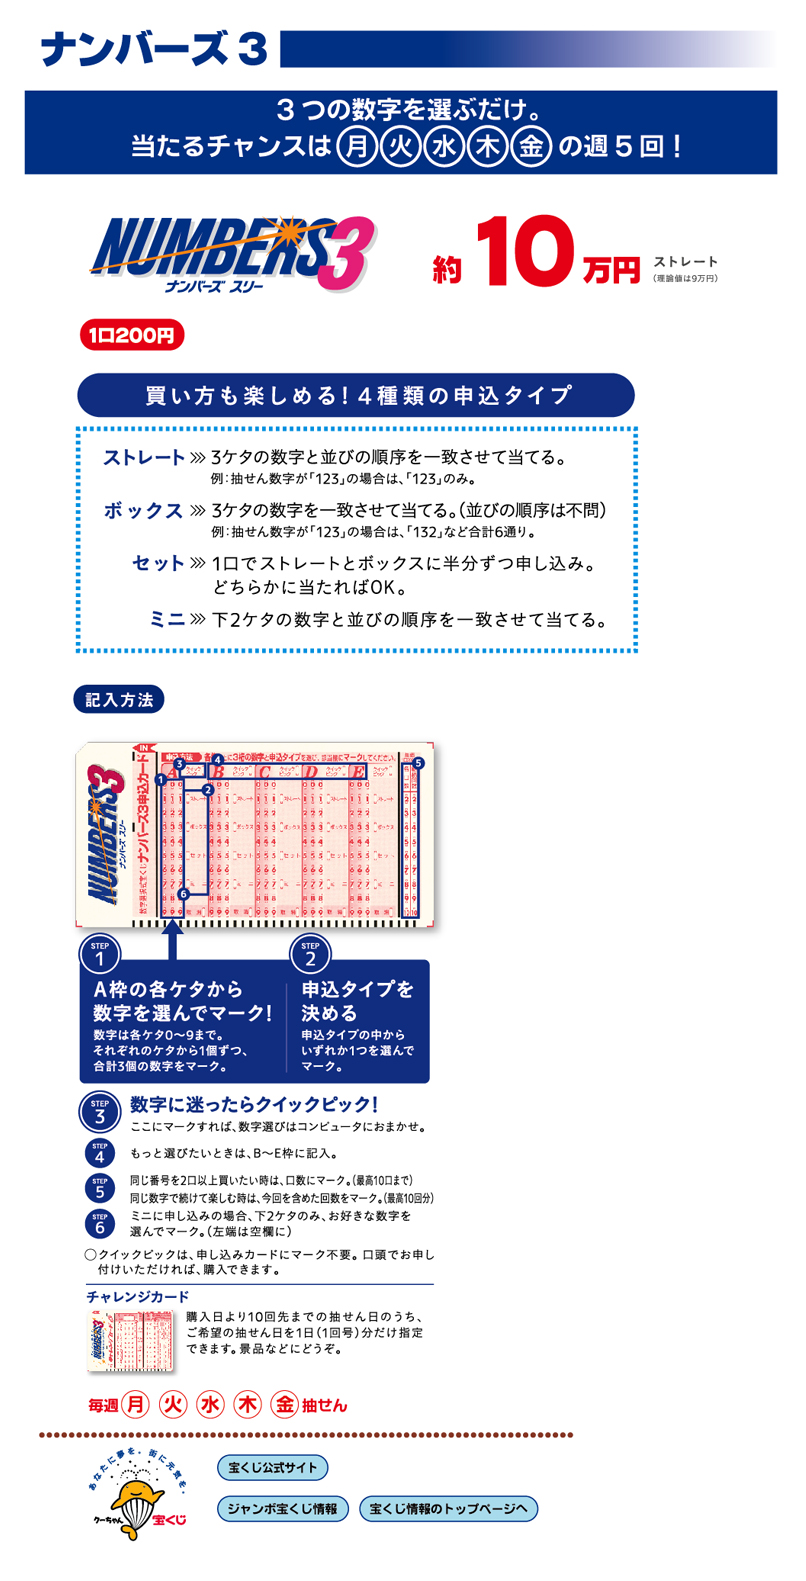 只选择3个号码3个数字。 中奖的机会是月火水木金每周5次! 直球大约10万日元的购买方法是4种1口200日元 